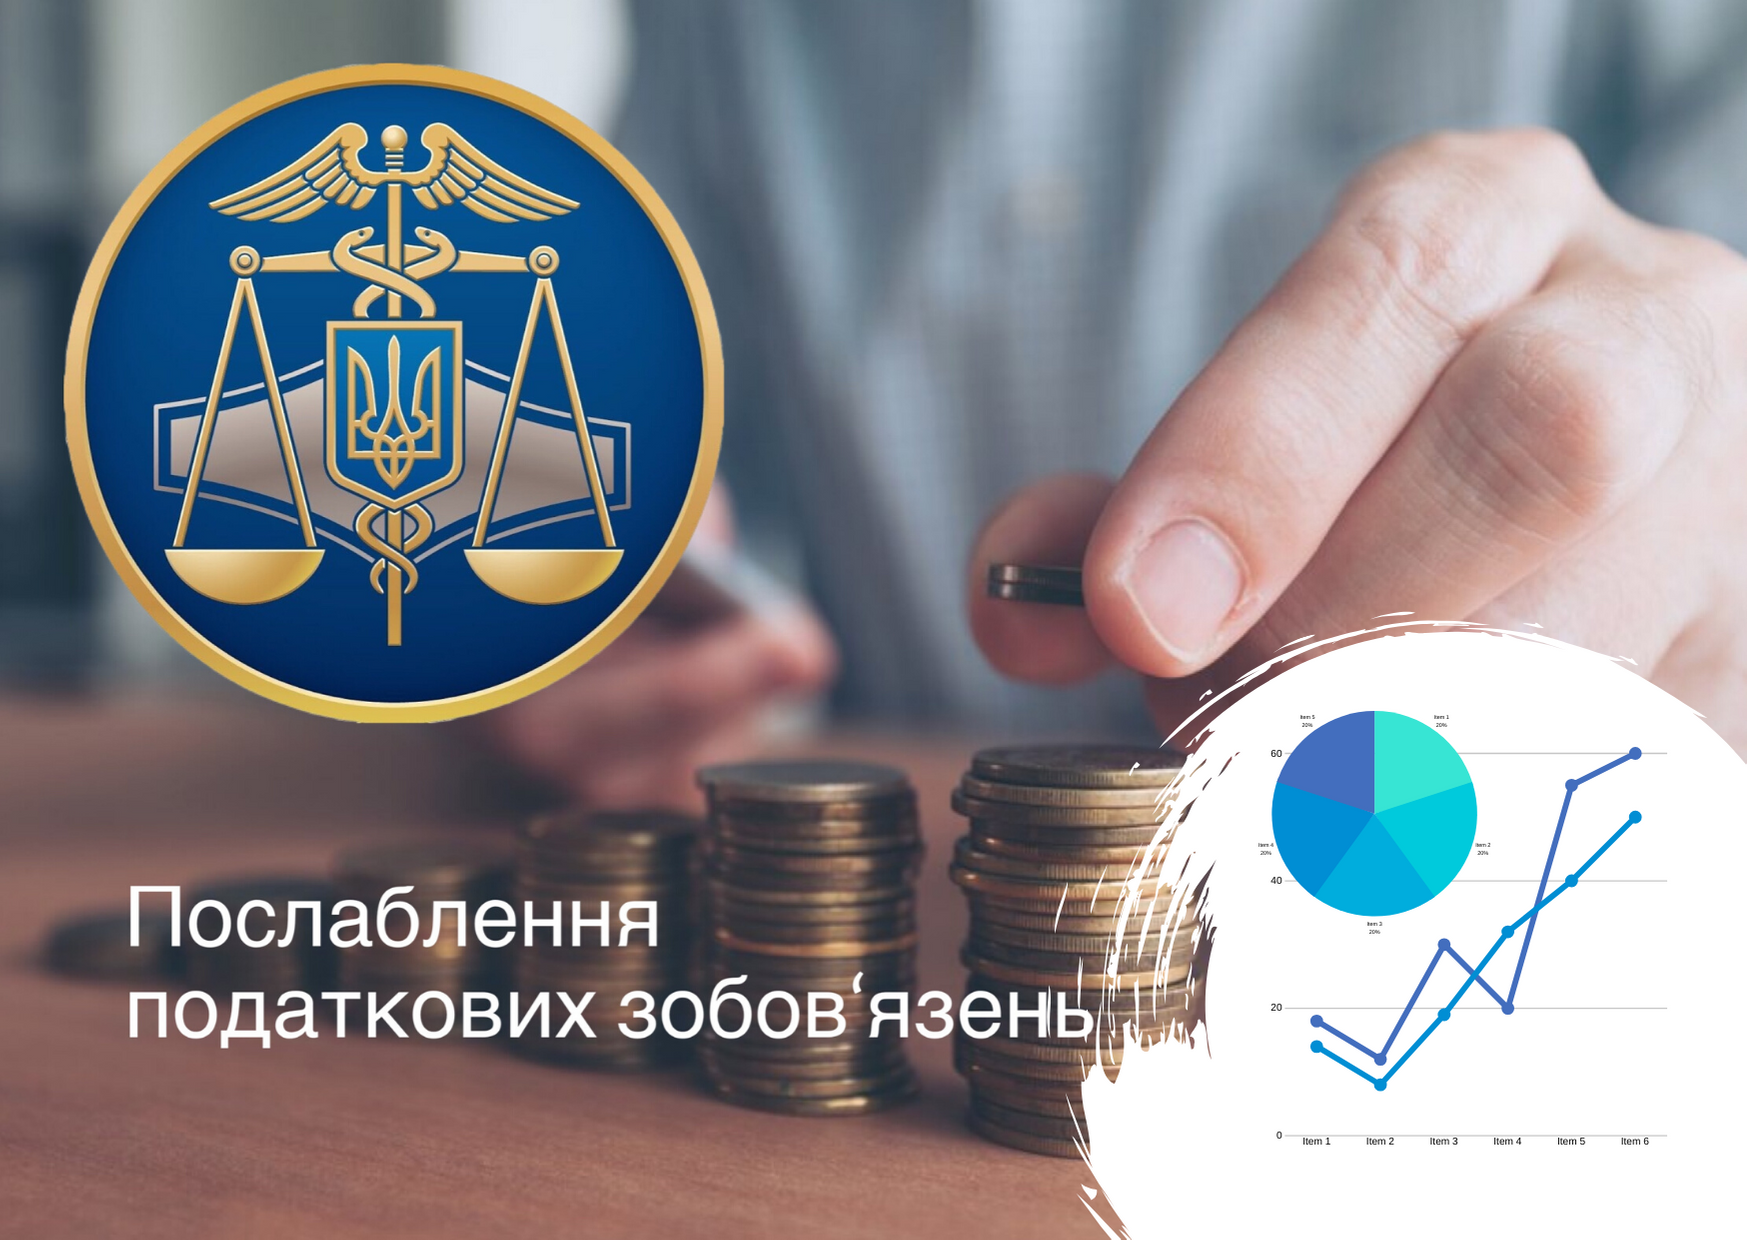 Податки на карантині - короткий огляд ситуації в Україні